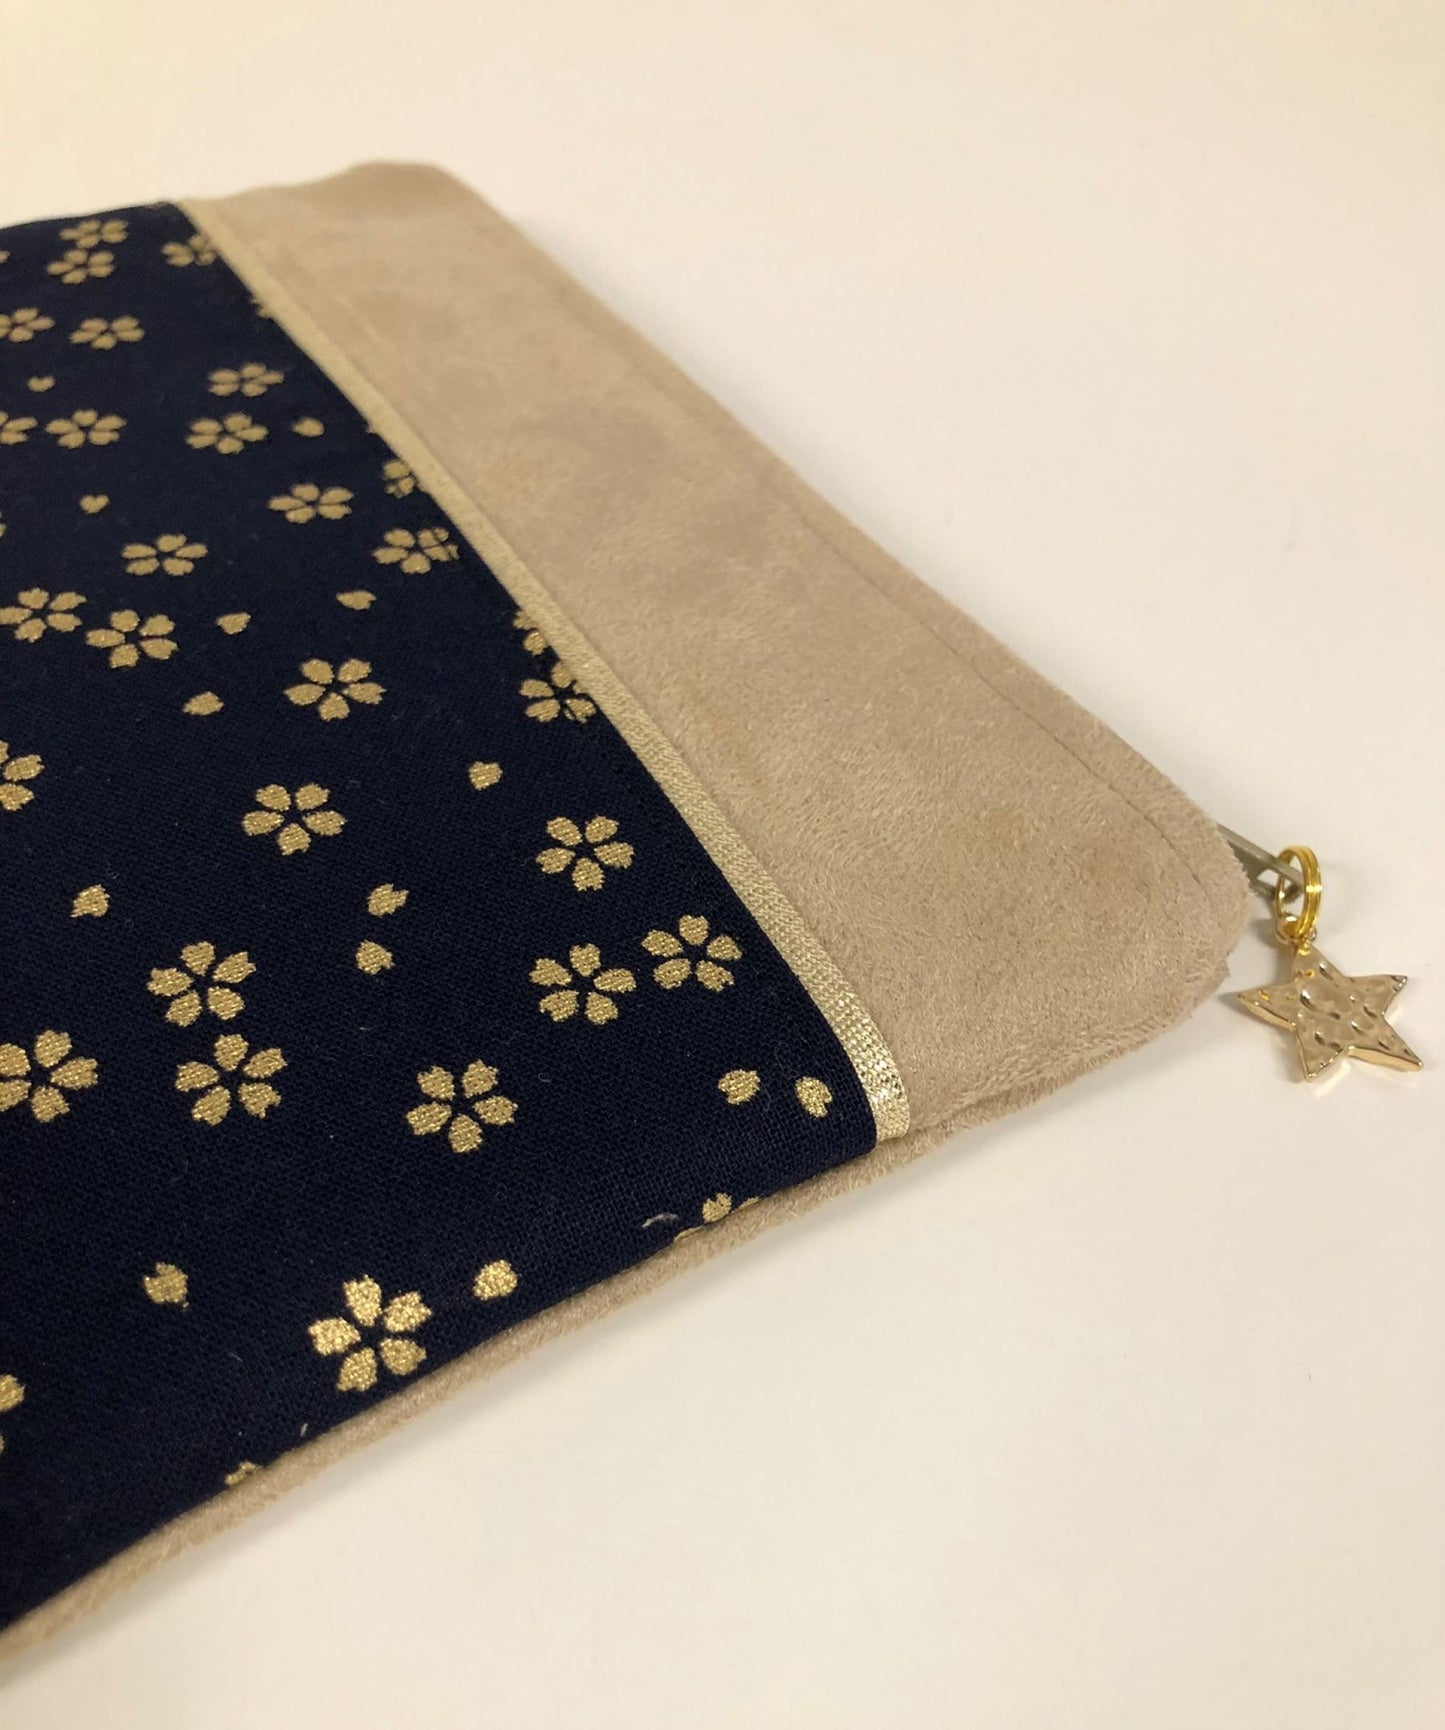 Porte-monnaie beige et bleu nuit en tissu japonais à fleurs dorées